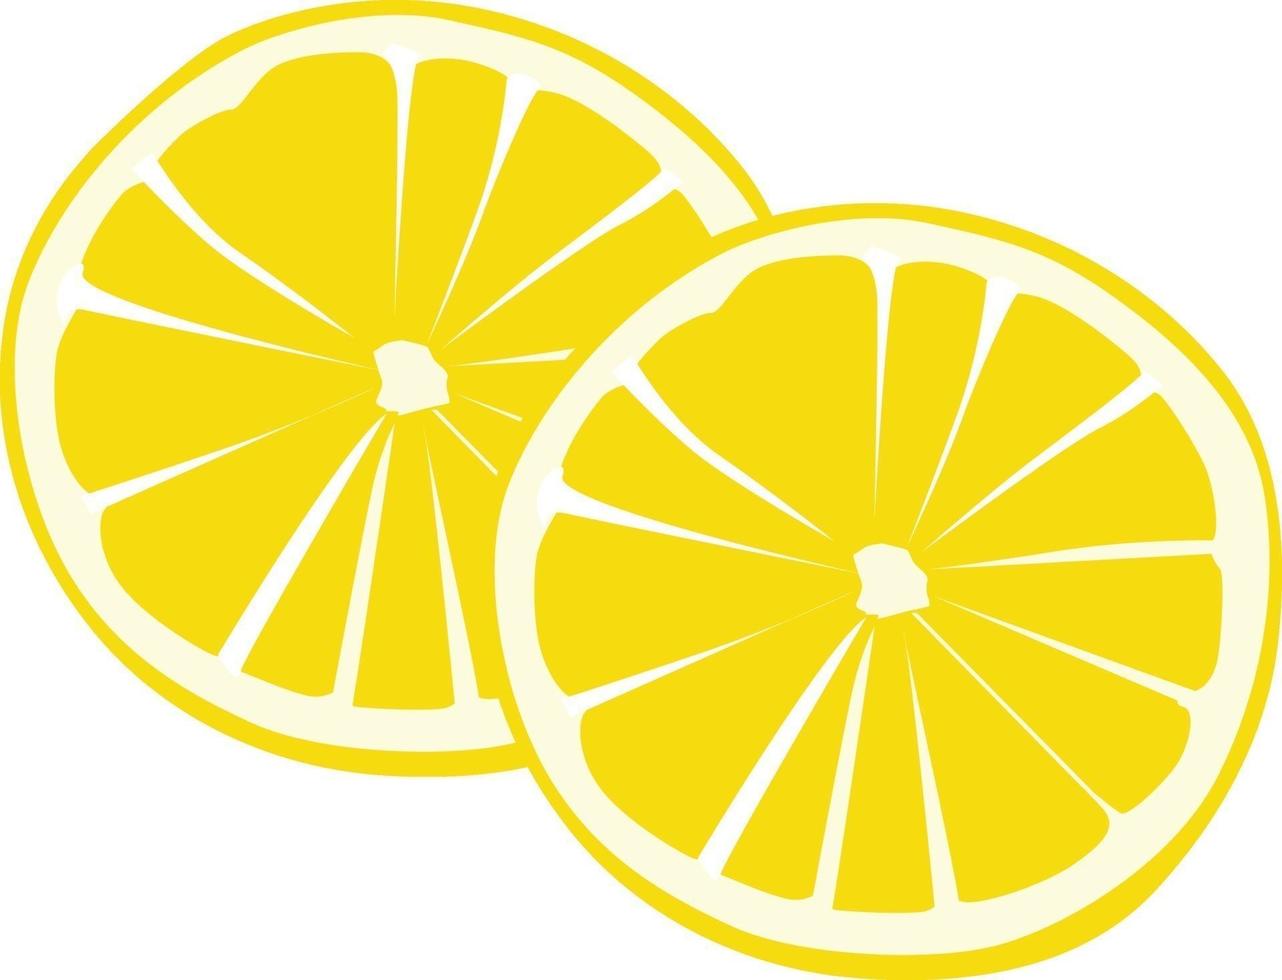 Zitronen in Scheiben geschnitten, Illustration, Vektor auf weißem Hintergrund.